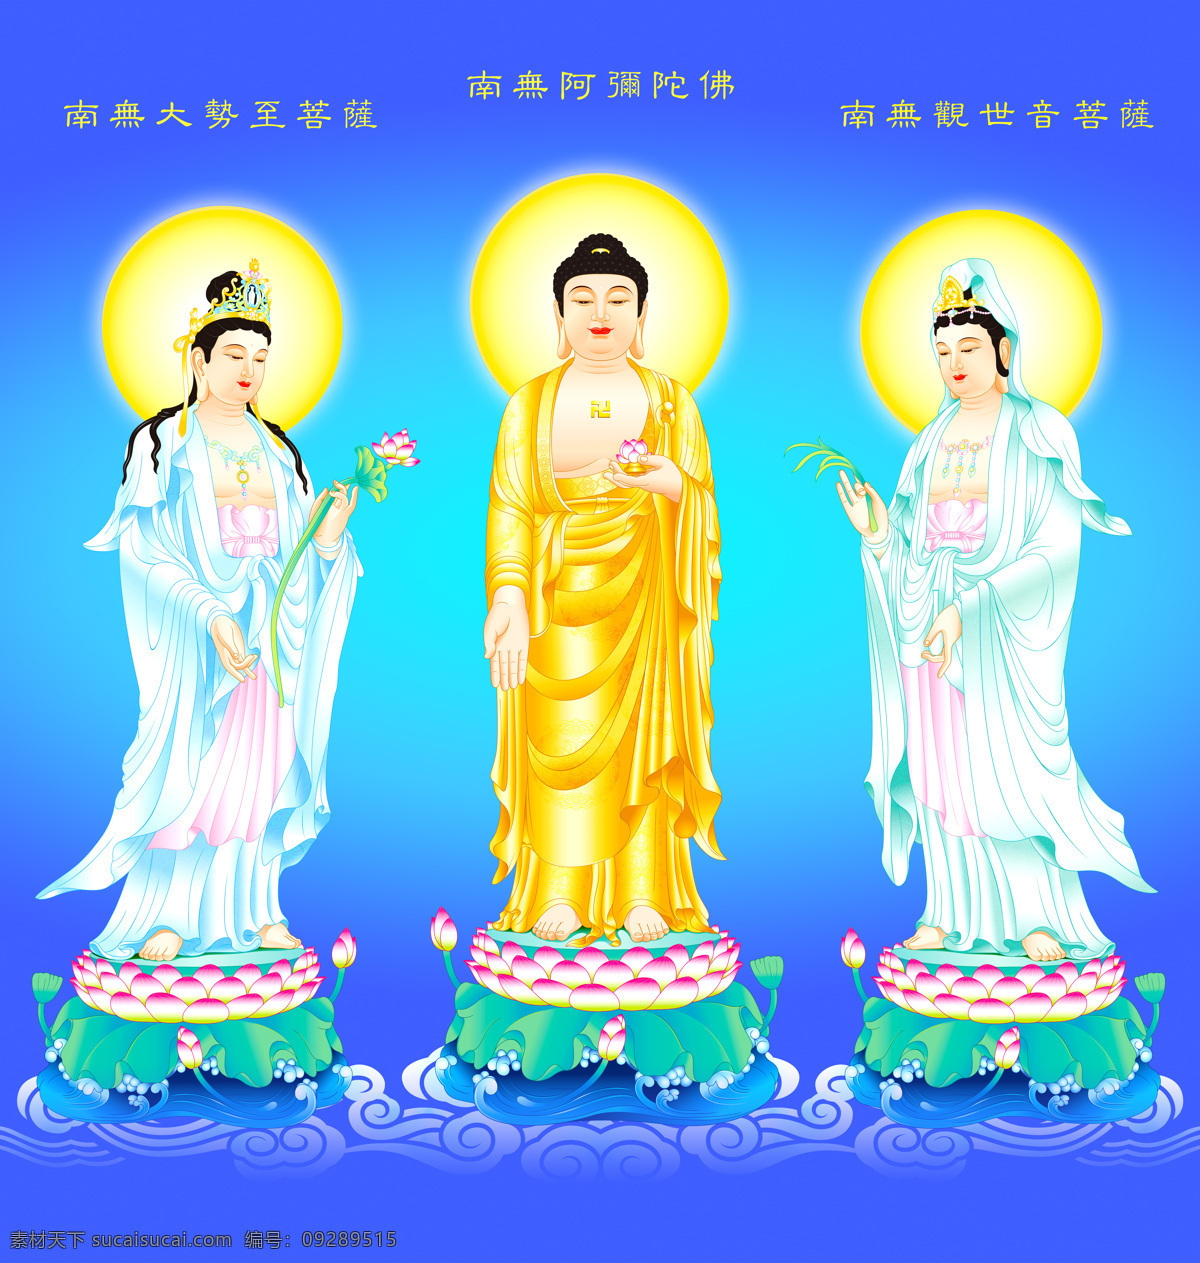 西方三圣图片 阿弥陀佛 大势至菩萨 观世音菩萨 佛像 佛 佛教 佛法 文化艺术 宗教信仰